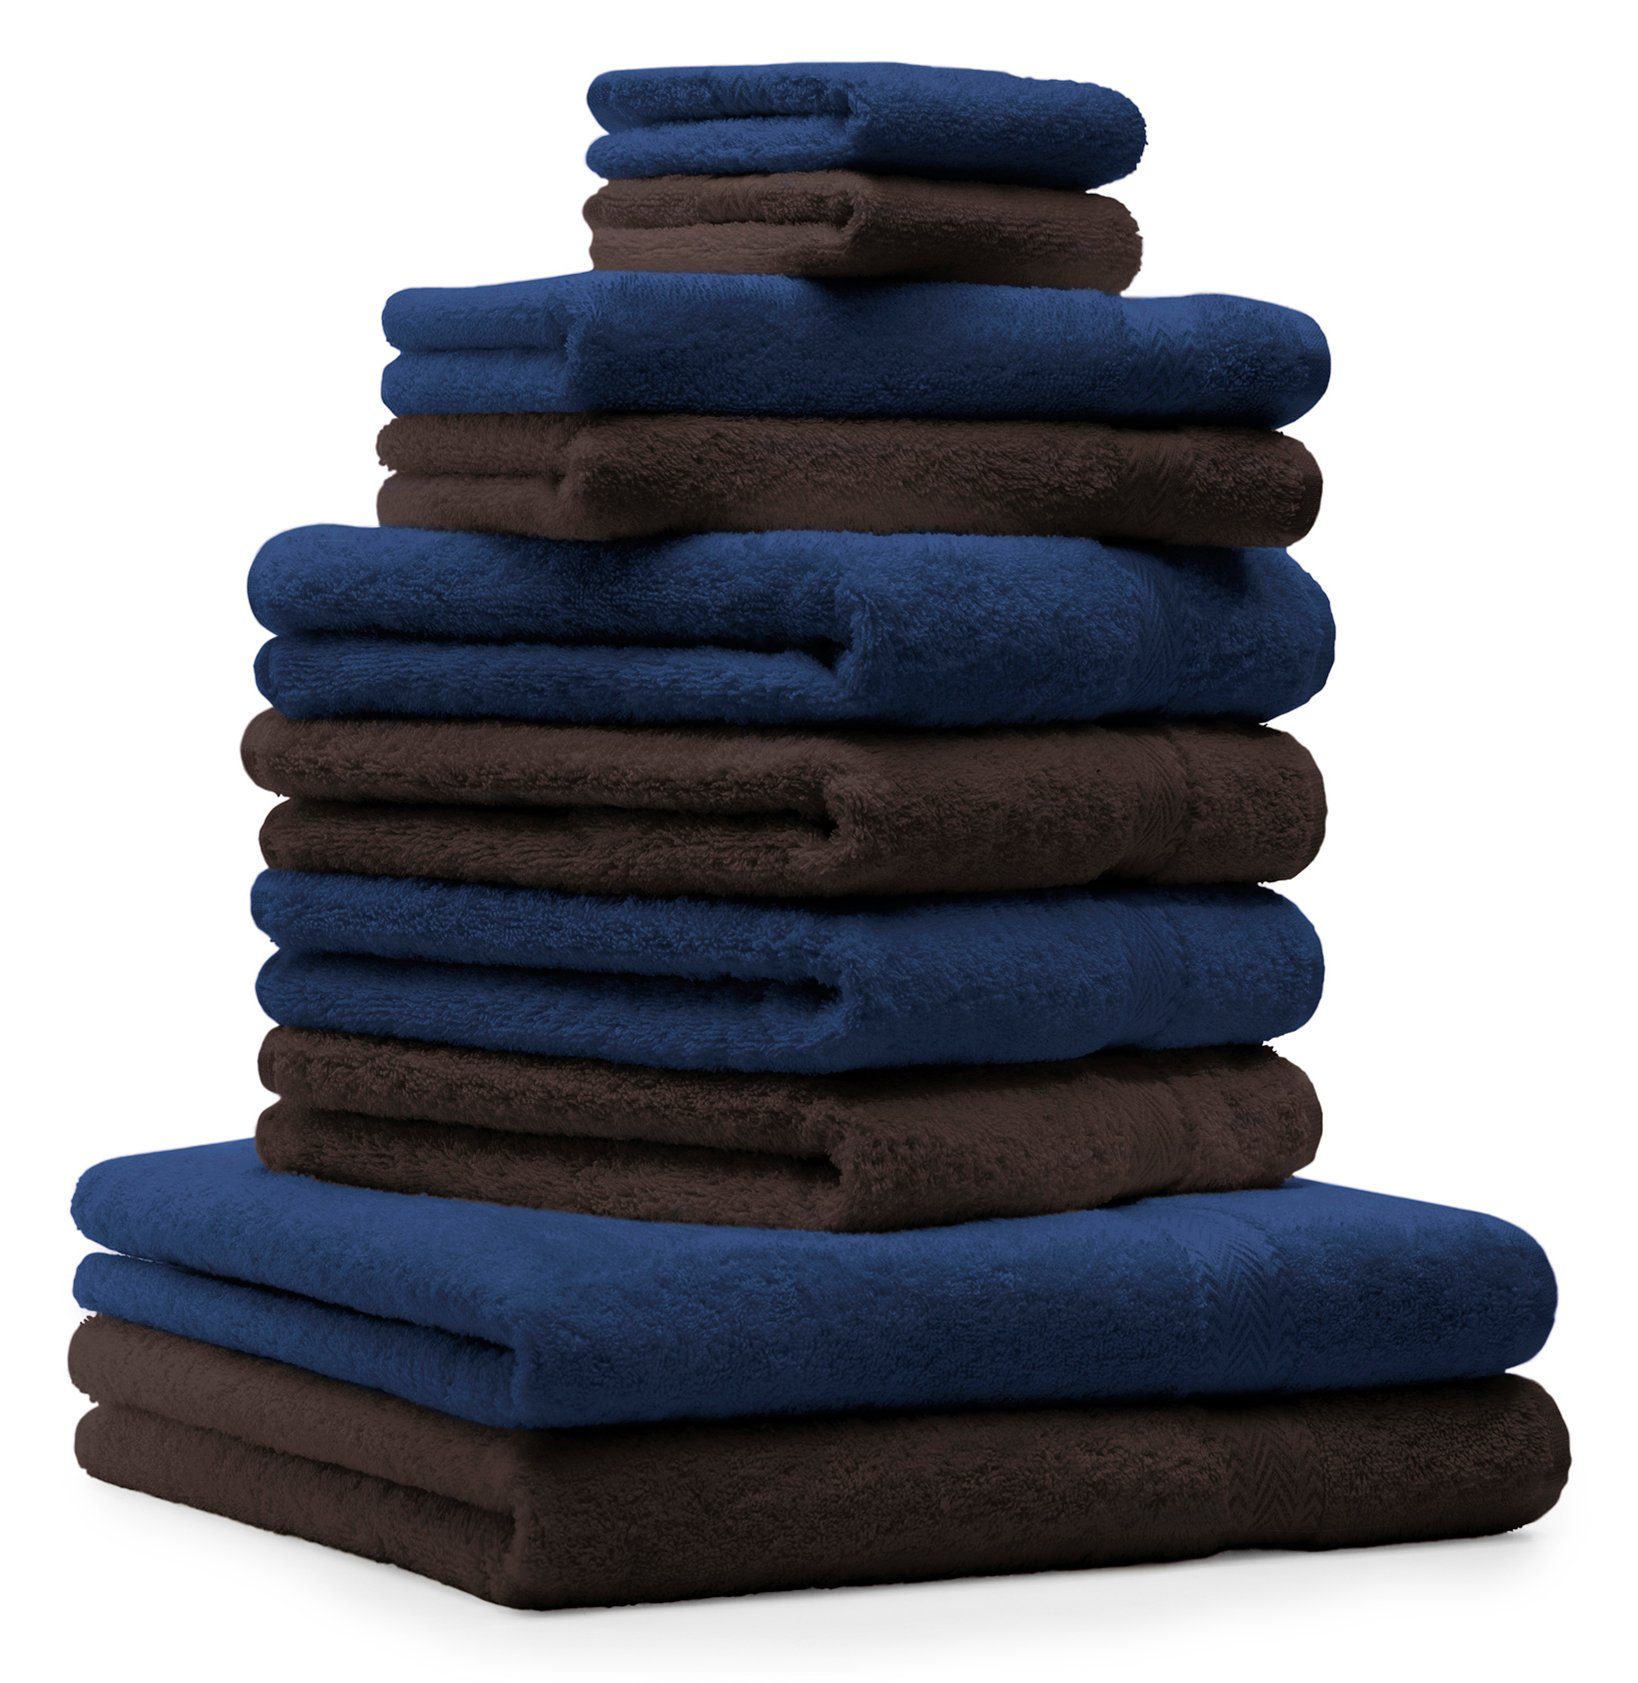 und Classic Baumwolle Betz Handtuch Set Farbe Dunkelbraun, dunkelblau 10-TLG. 100% Handtücher-Set